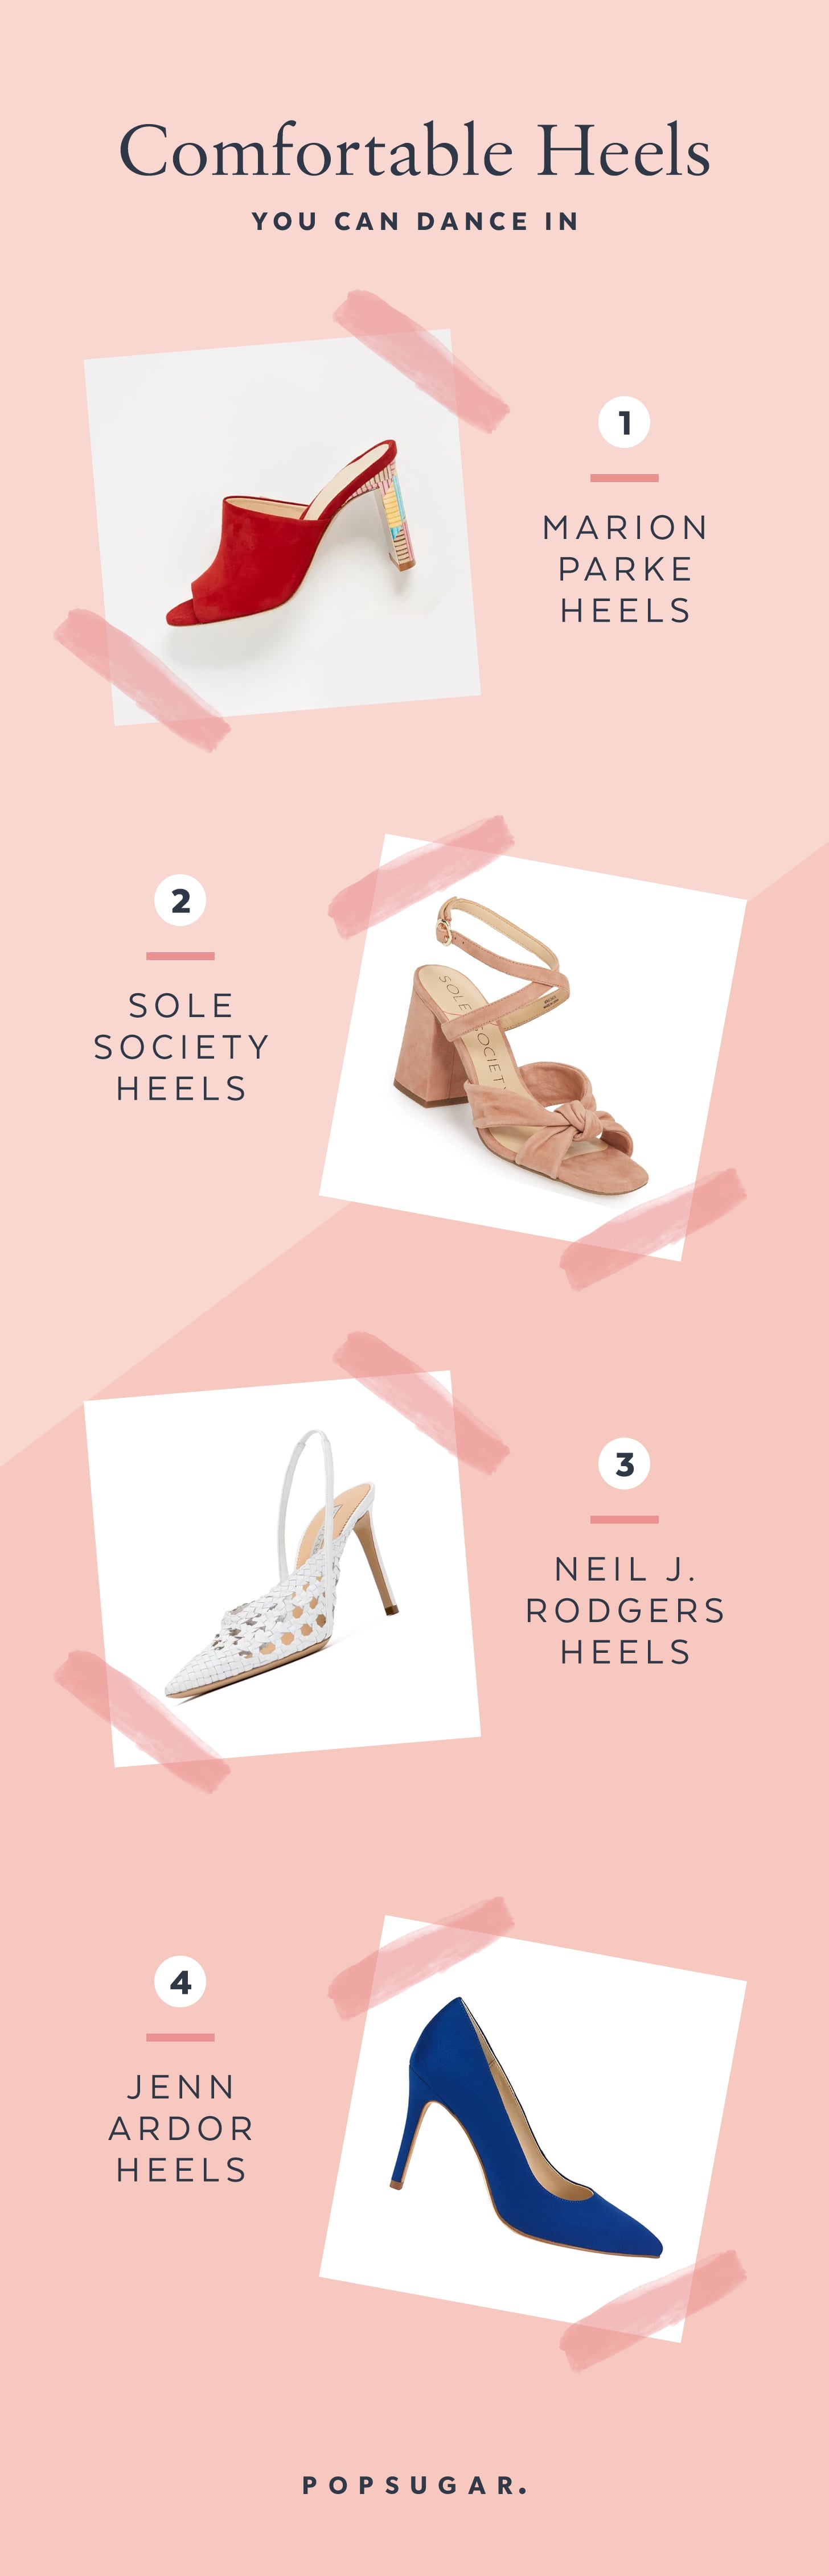 most comfortable heels 2018